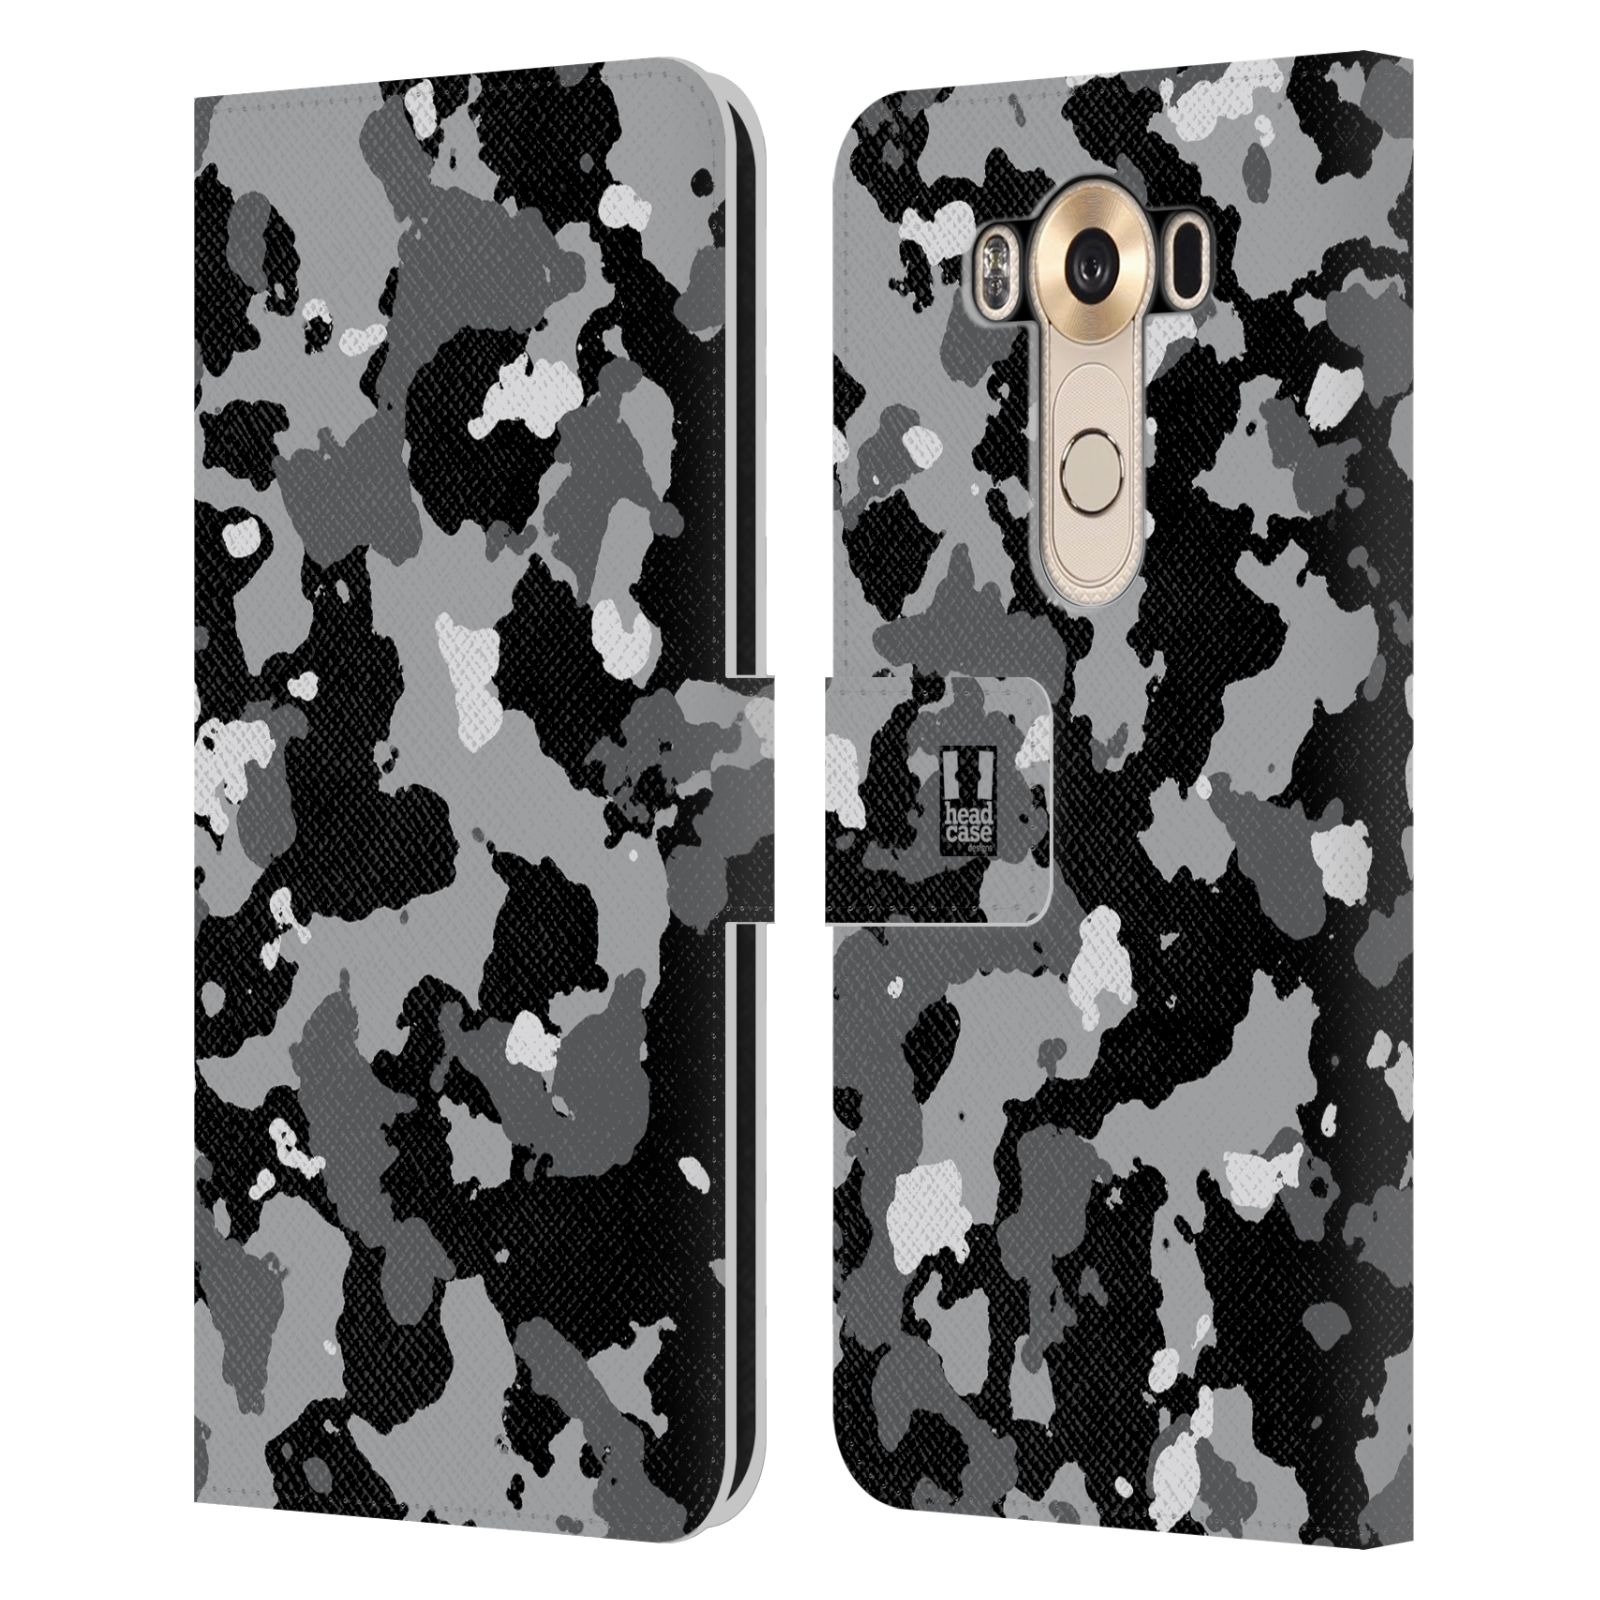 Pouzdro na mobil LG V10 - Head Case - kamuflaž černá a šedá